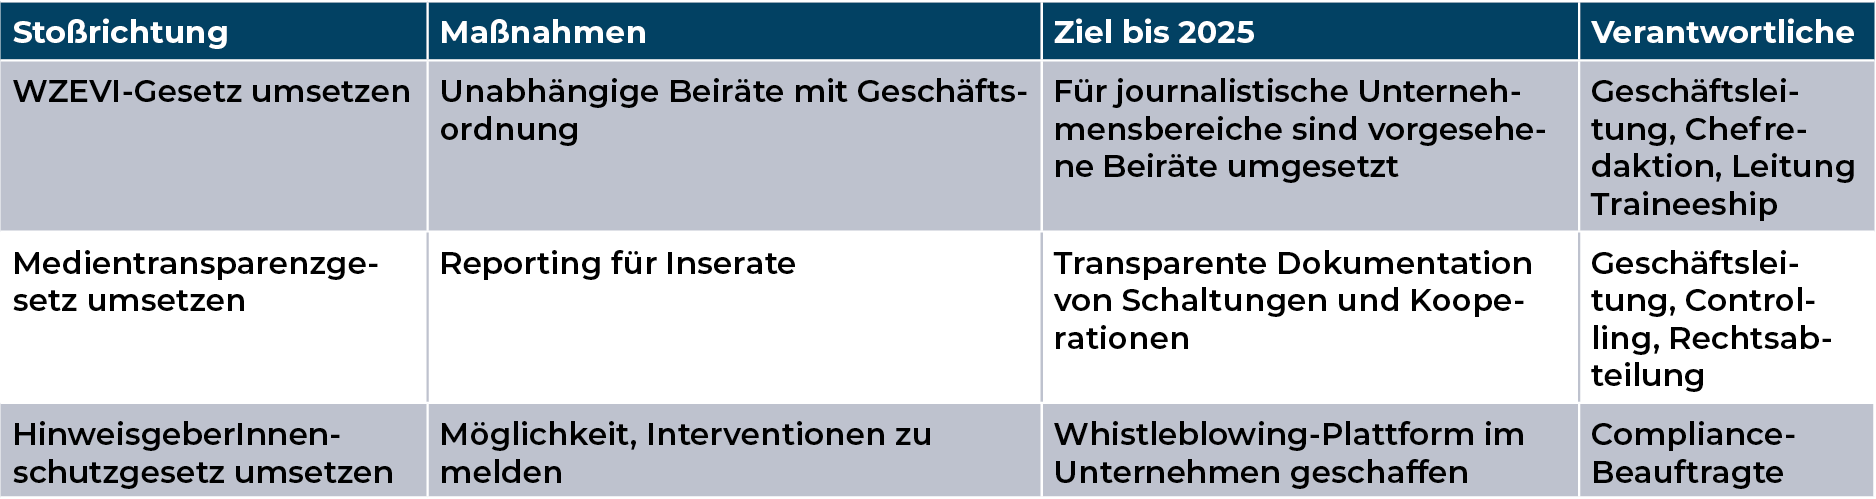 Mediengruppe Wiener Zeitung Nachhaltigkeitsbericht 2023 - mgwz_soziales_politische-unabhängigkeit